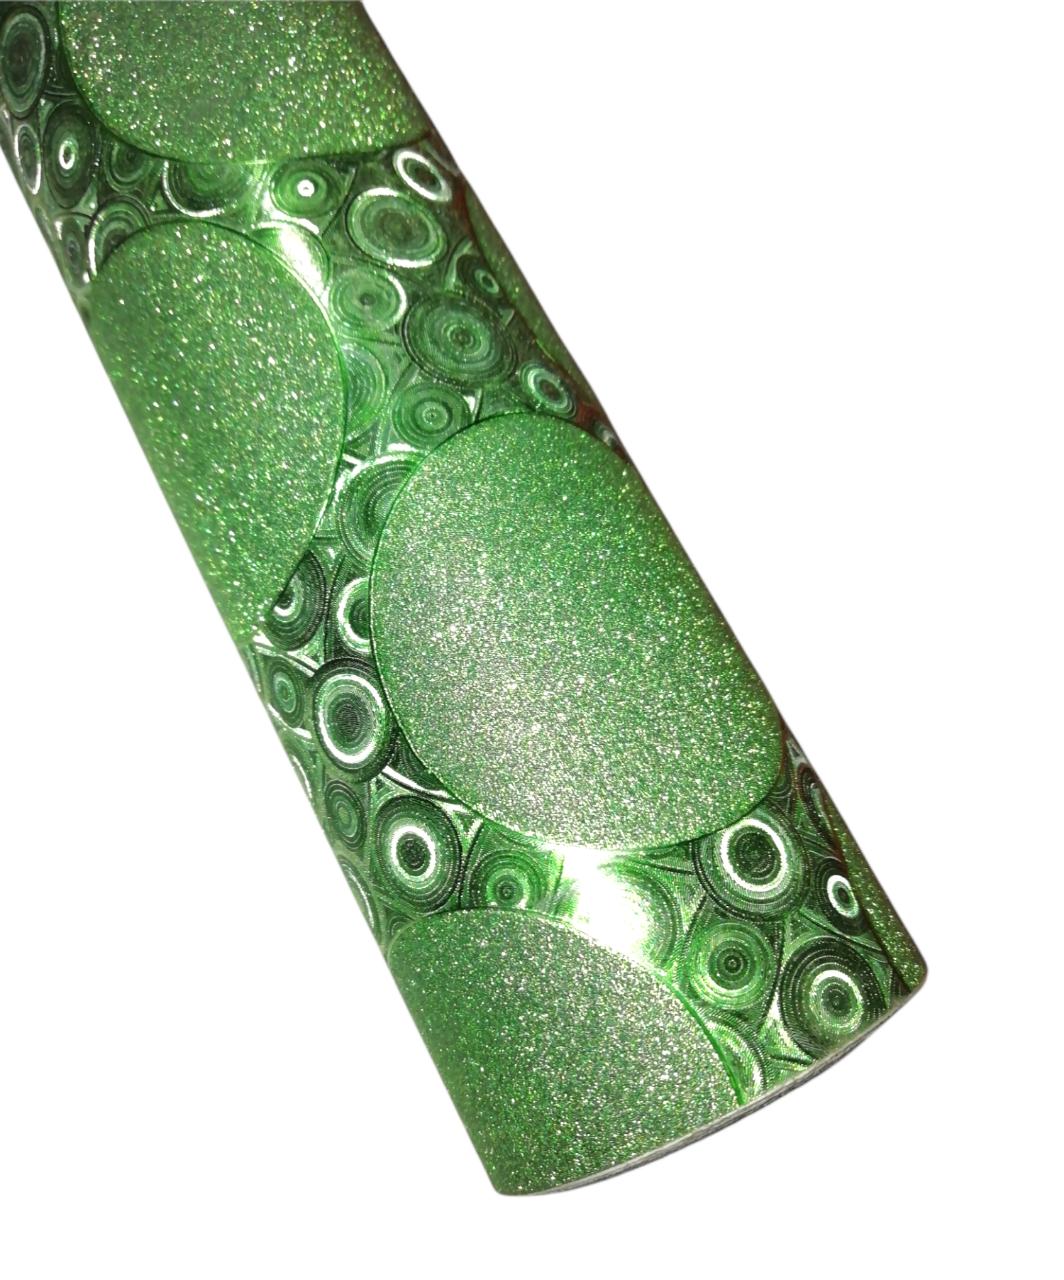 Contac holografico con gliter verde 